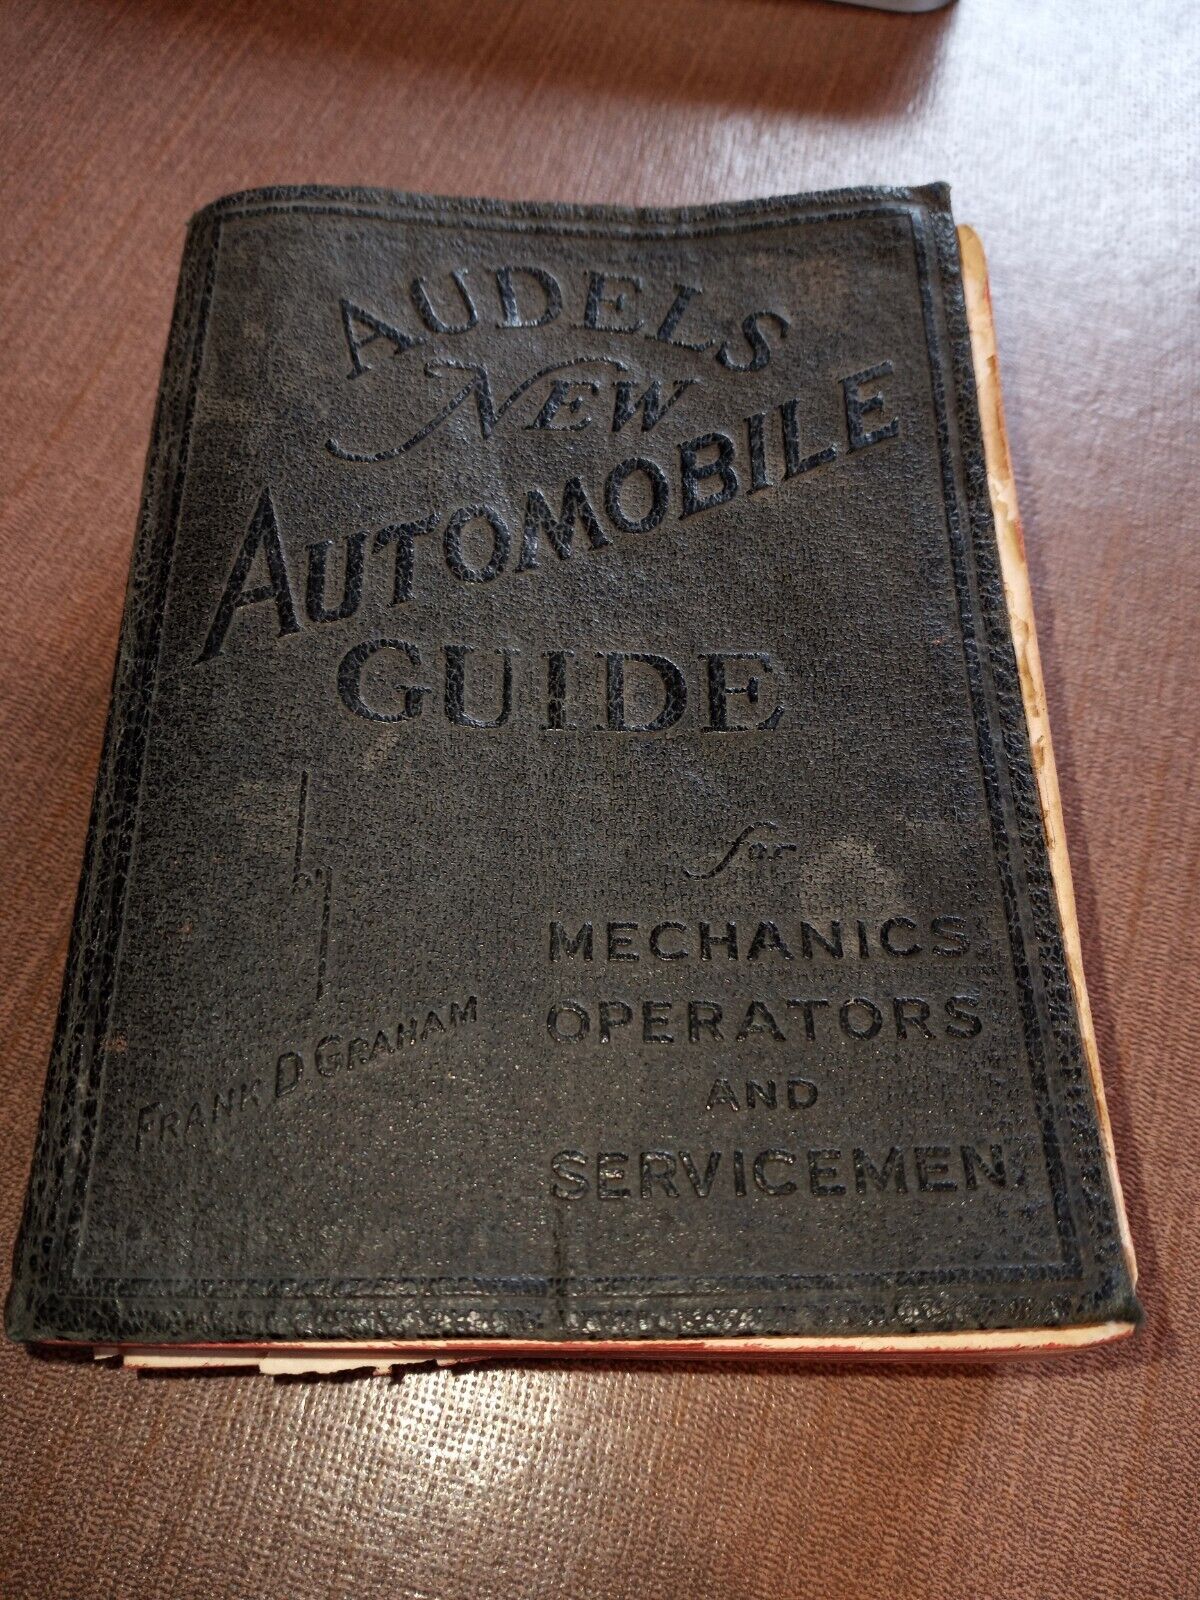 Audels New Automobile Guide for Mechanics Operators & Servicemen~1938~Graham